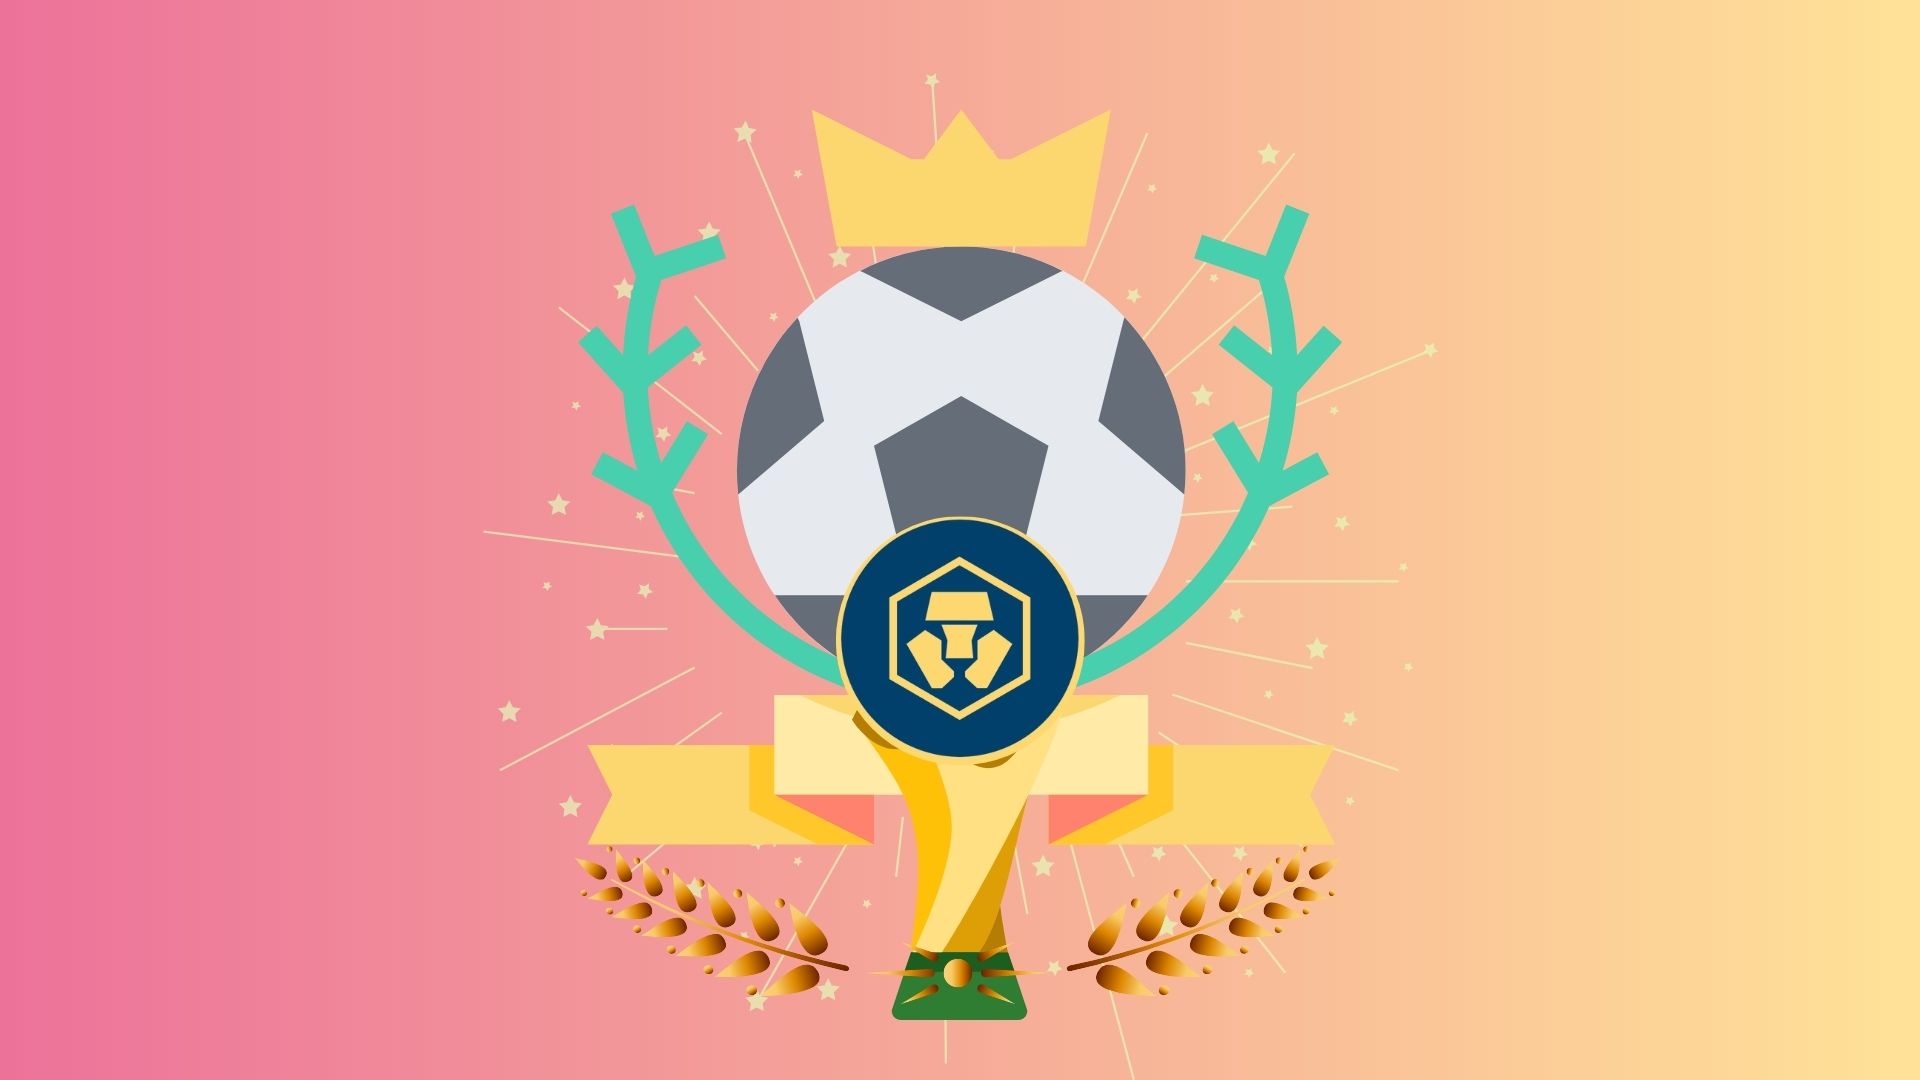 Crypto.com – официальный спонсор FIFA 2022 в Катаре. Заглавный коллаж новости.